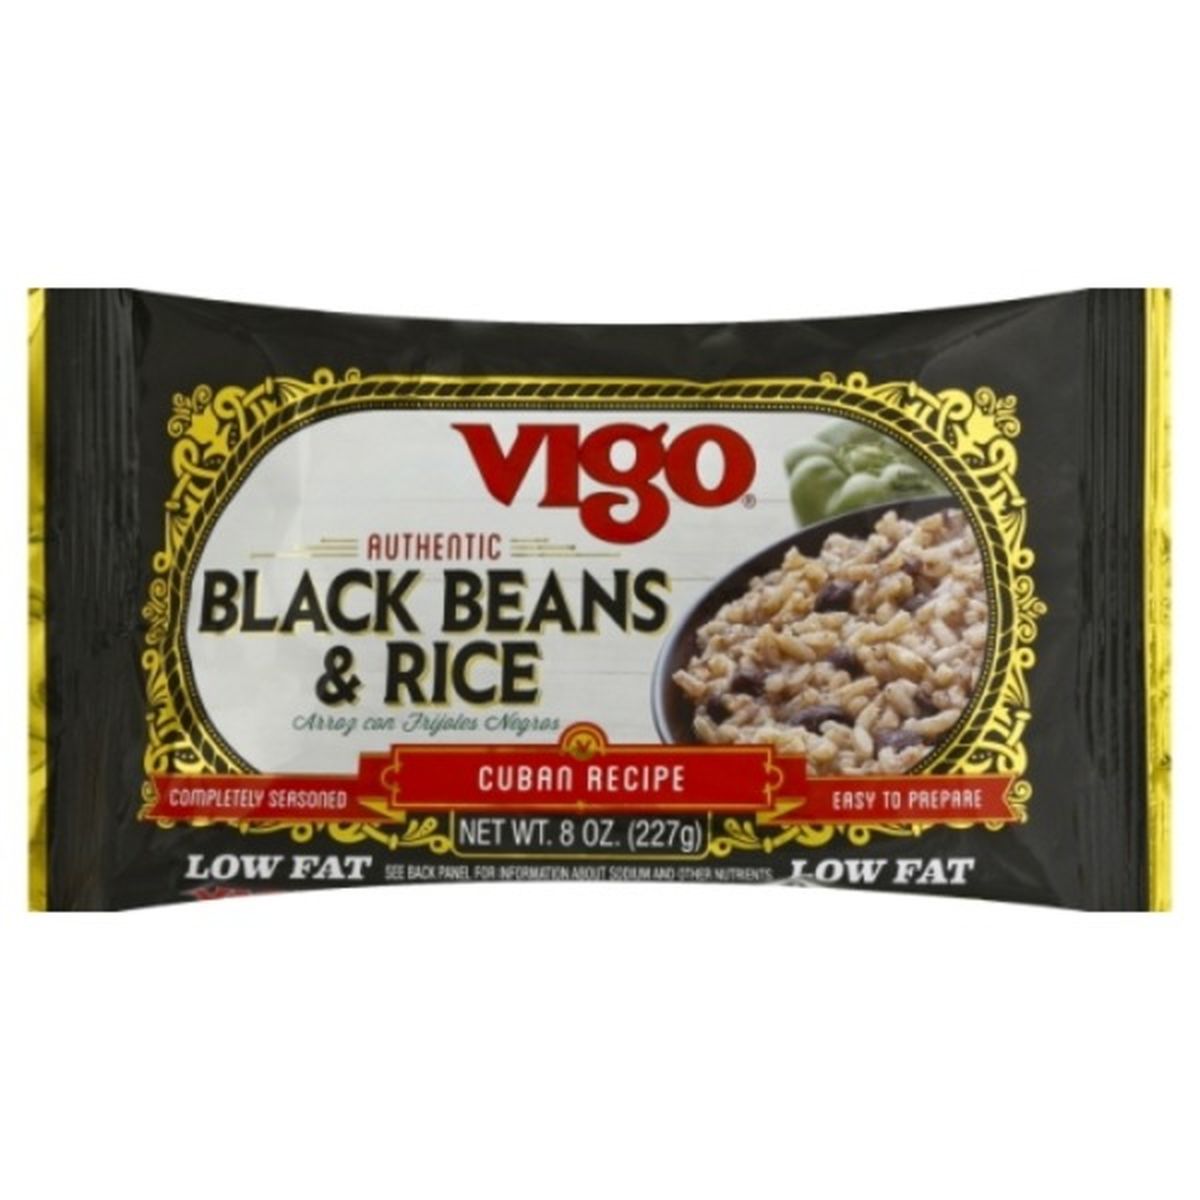 Calories in Vigo Black Beans & Rice, Authentic